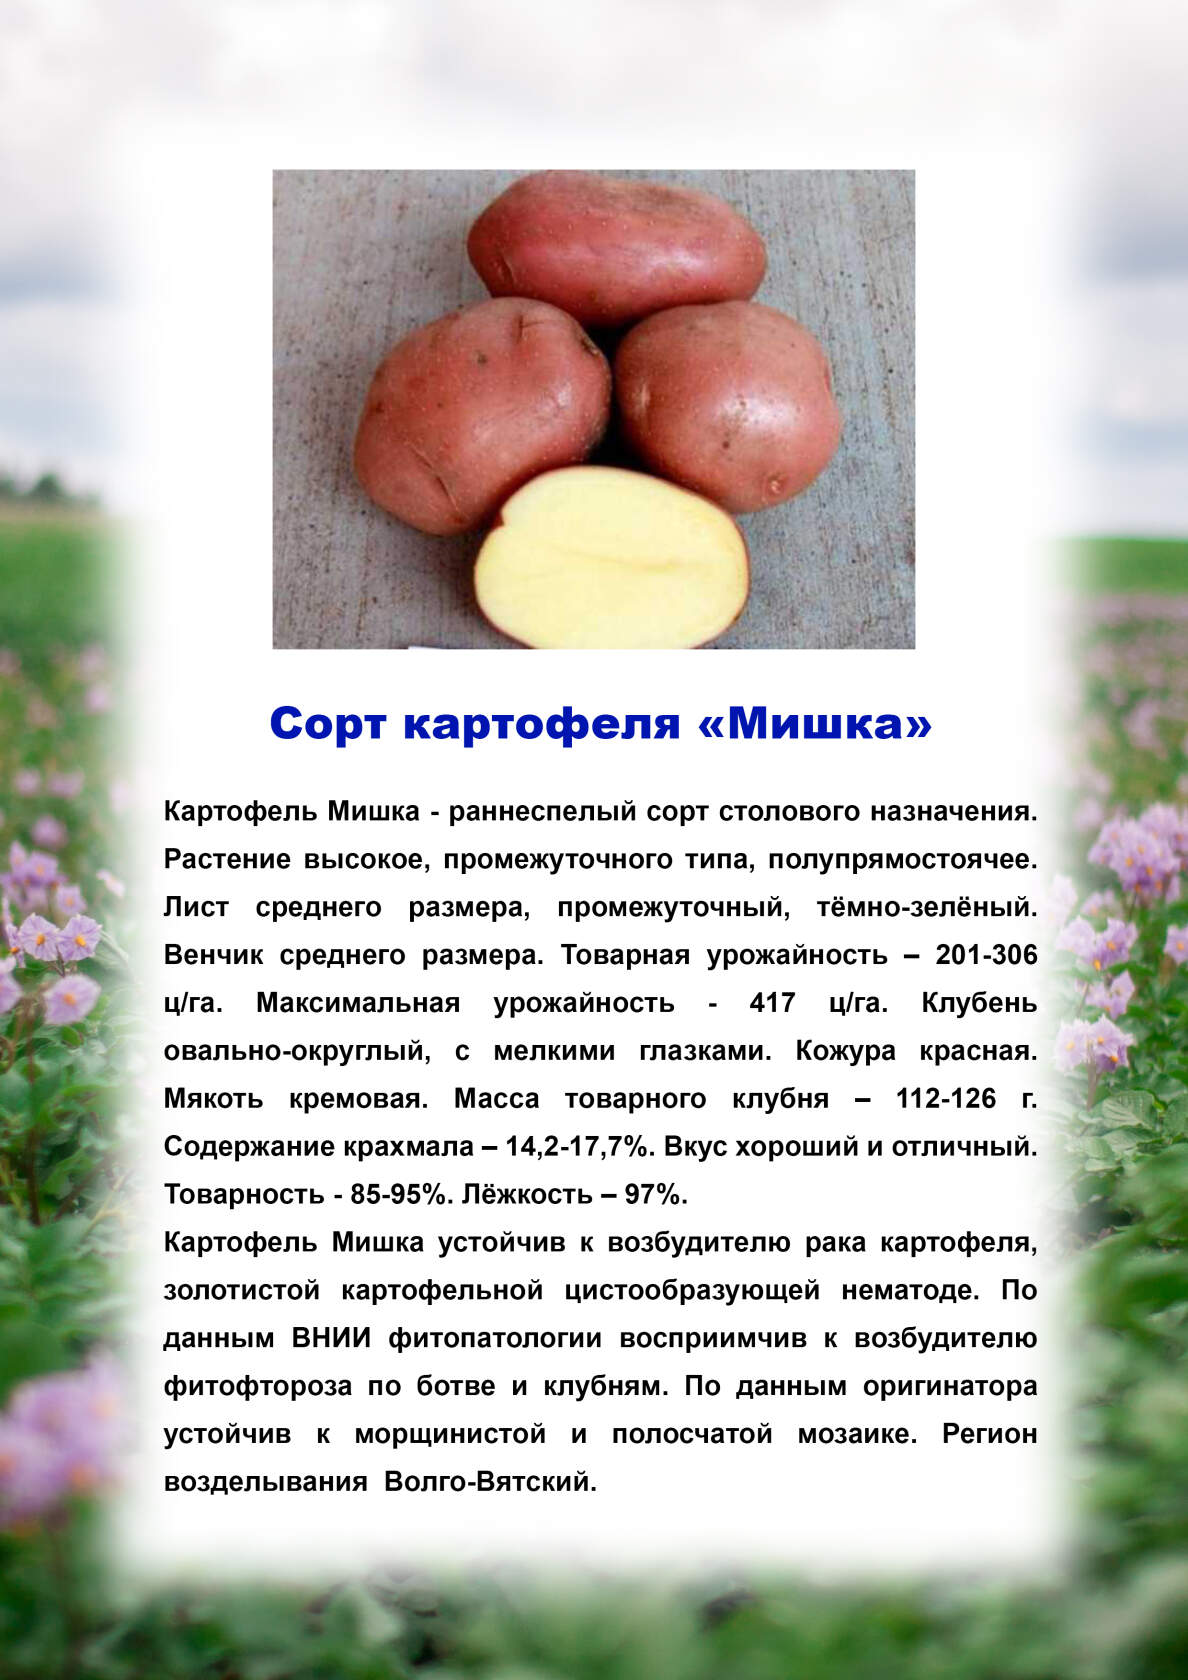 Картофель Мишка: описание, сравнение с другими сортами (таблицы)